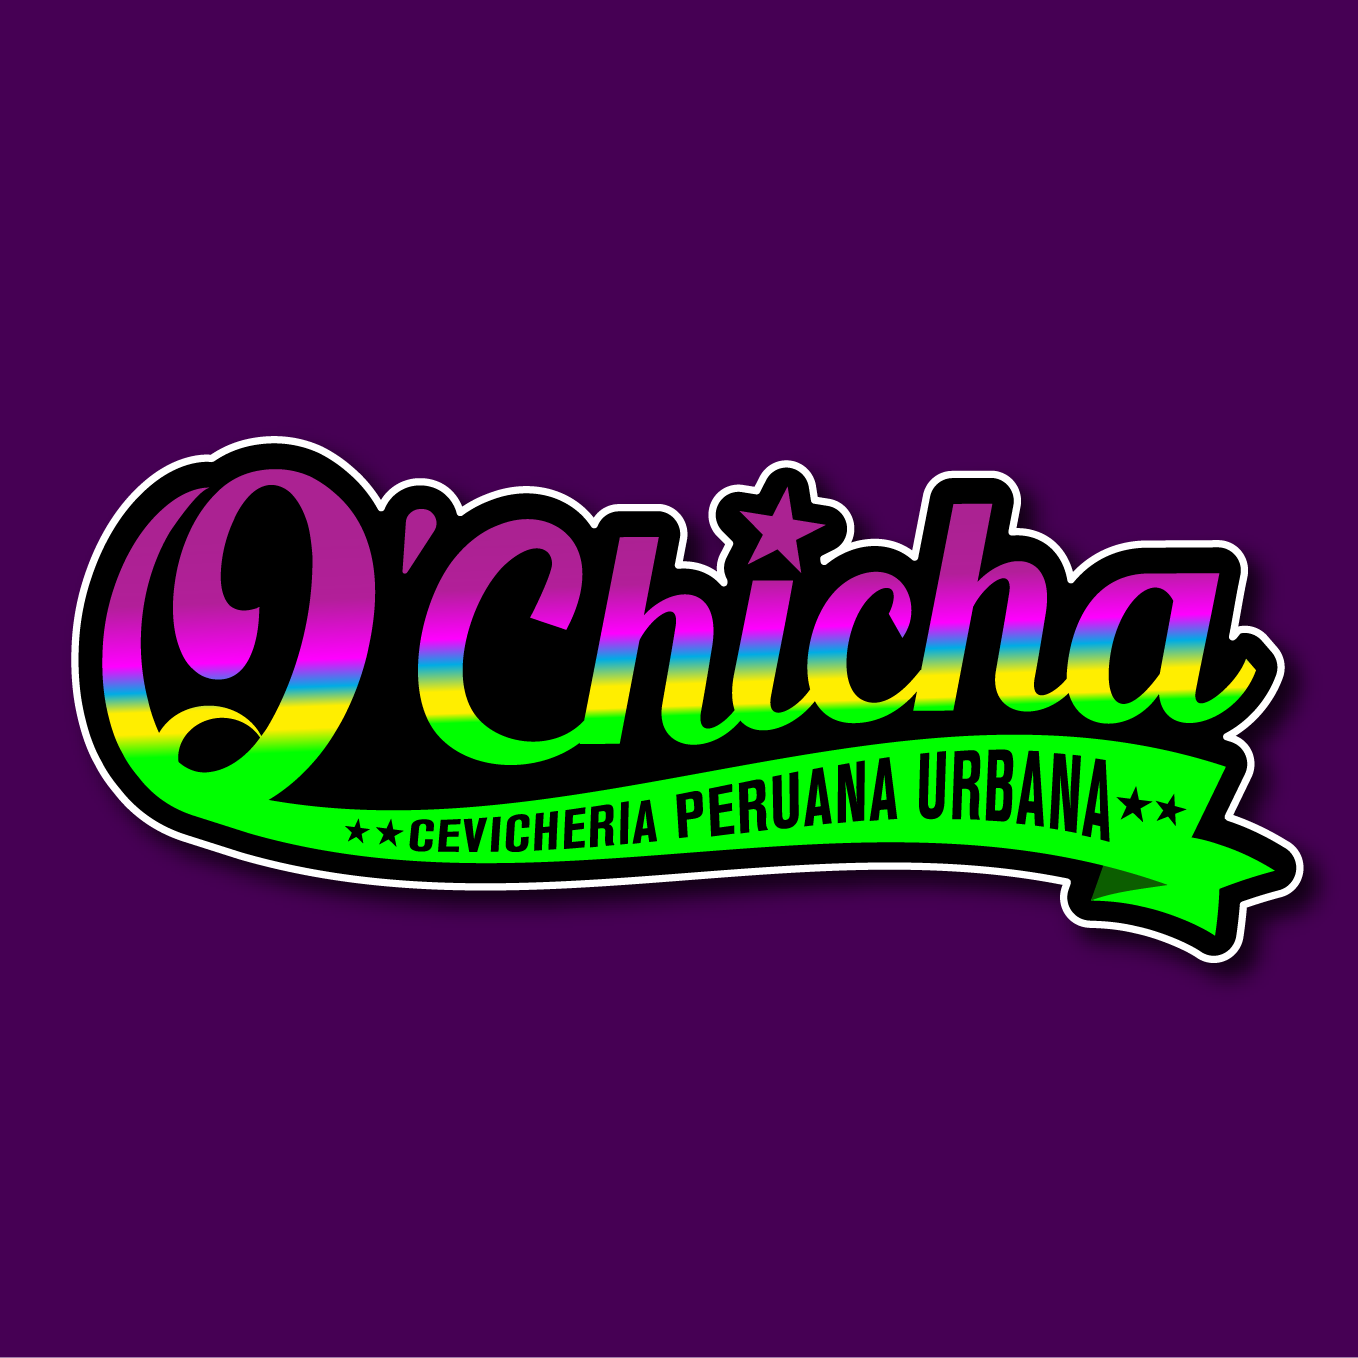 Qchicha